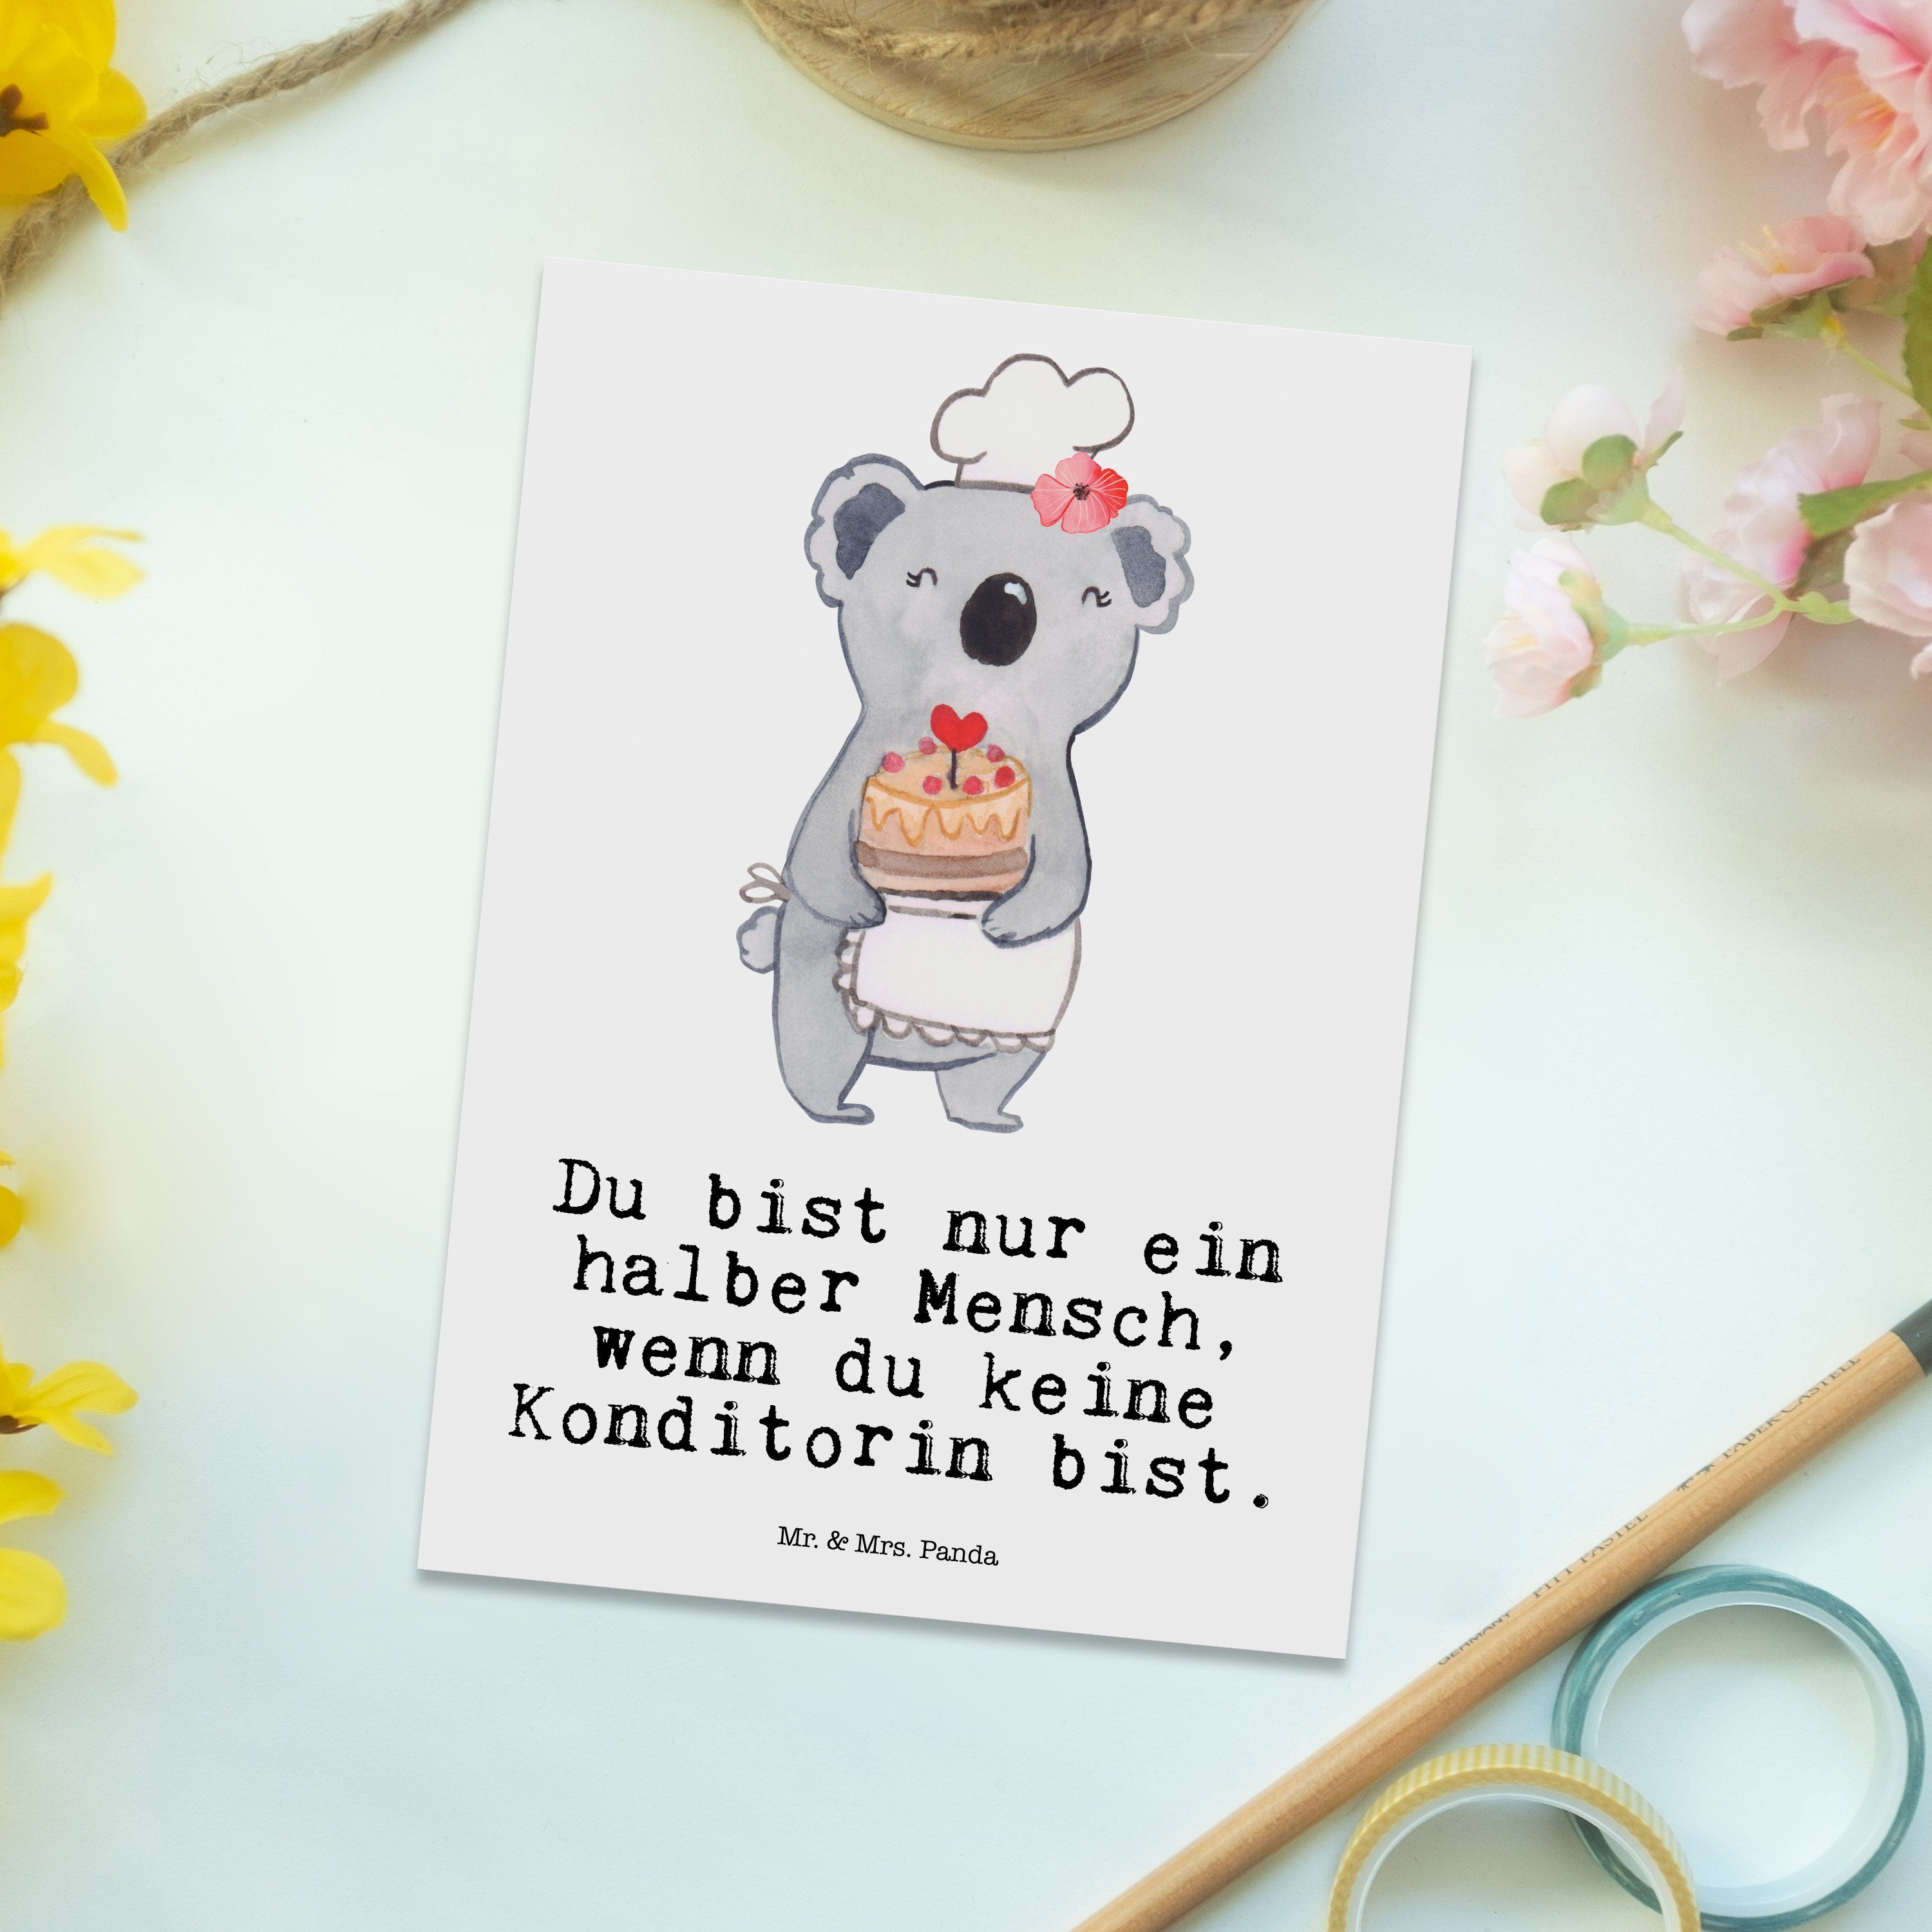 Mr. & Einladung, Herz Postkarte mit Patissier Geschenk, Panda - Mrs. Bäckerin, Konditorin - Weiß